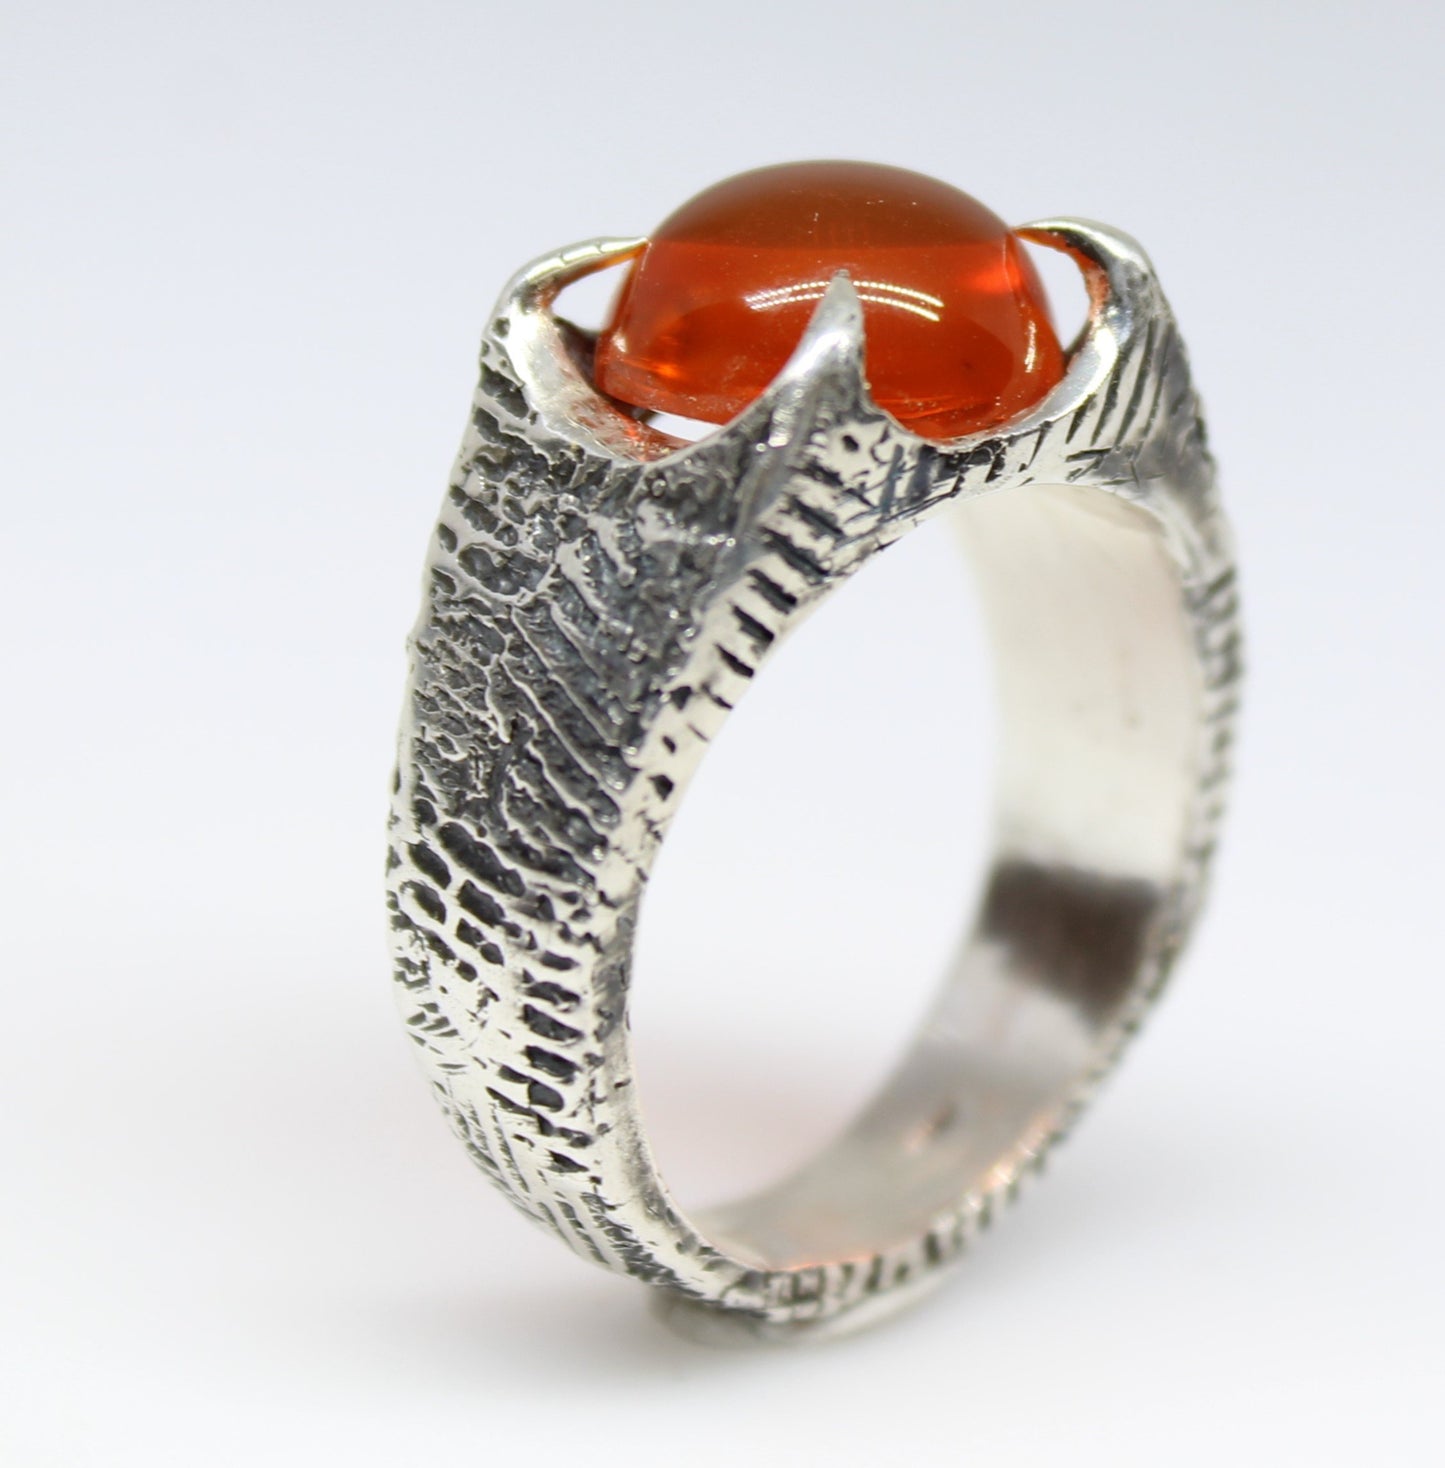 Orange Fire Opal Sterling Silver Ring